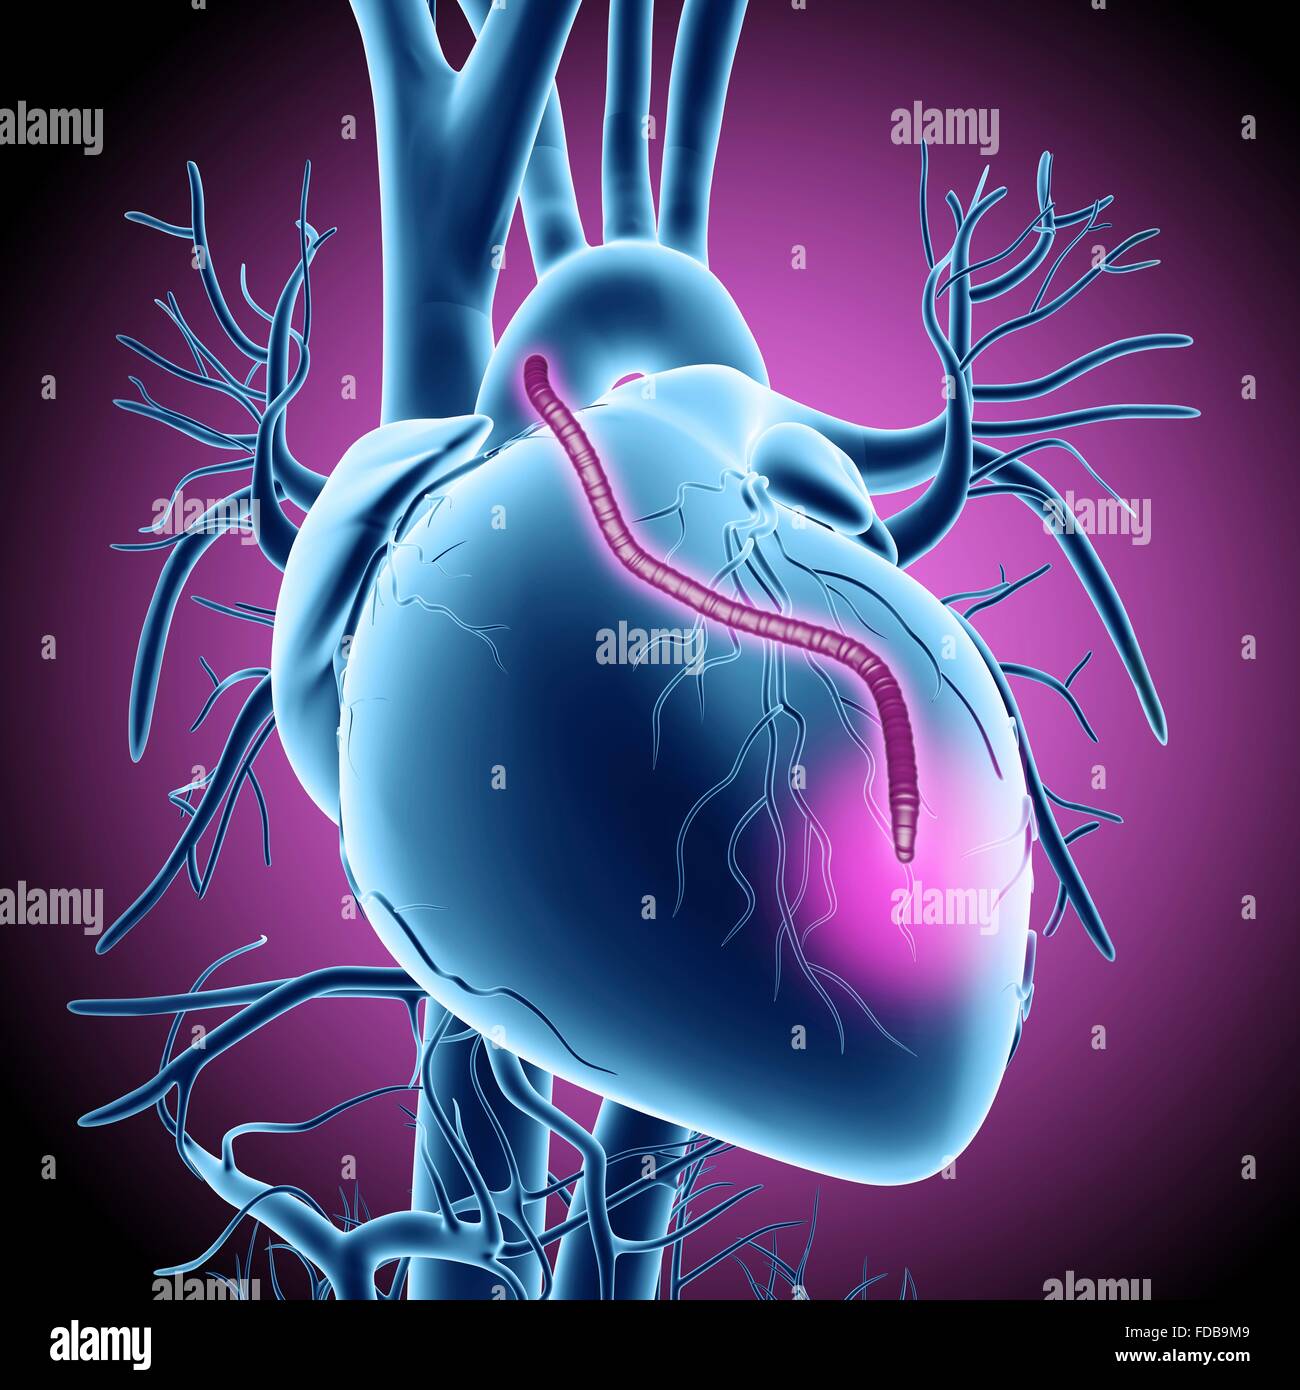 Injerto de bypass del corazón. Equipo ilustraciones de un corazón que ha tenido una obstrucción de las arterias coronarias tratada mediante injerto de derivación de la arteria coronaria (CABG) cirugía. Las arterias coronarias son los pequeños vasos sanguíneos visto corriendo en la superficie externa del corazón. El suministro de sangre oxigenada para mantener el músculo del corazón bombeando, y una obstrucción puede causar un ataque cardíaco fatal. La solución es la cosecha de arterias en otras partes del cuerpo y utilizarlos para evitar el bloqueo. Un injerto es visto corriendo de la aorta, la principal arteria del cuerpo, la espalda a las arterias coronarias. Foto de stock